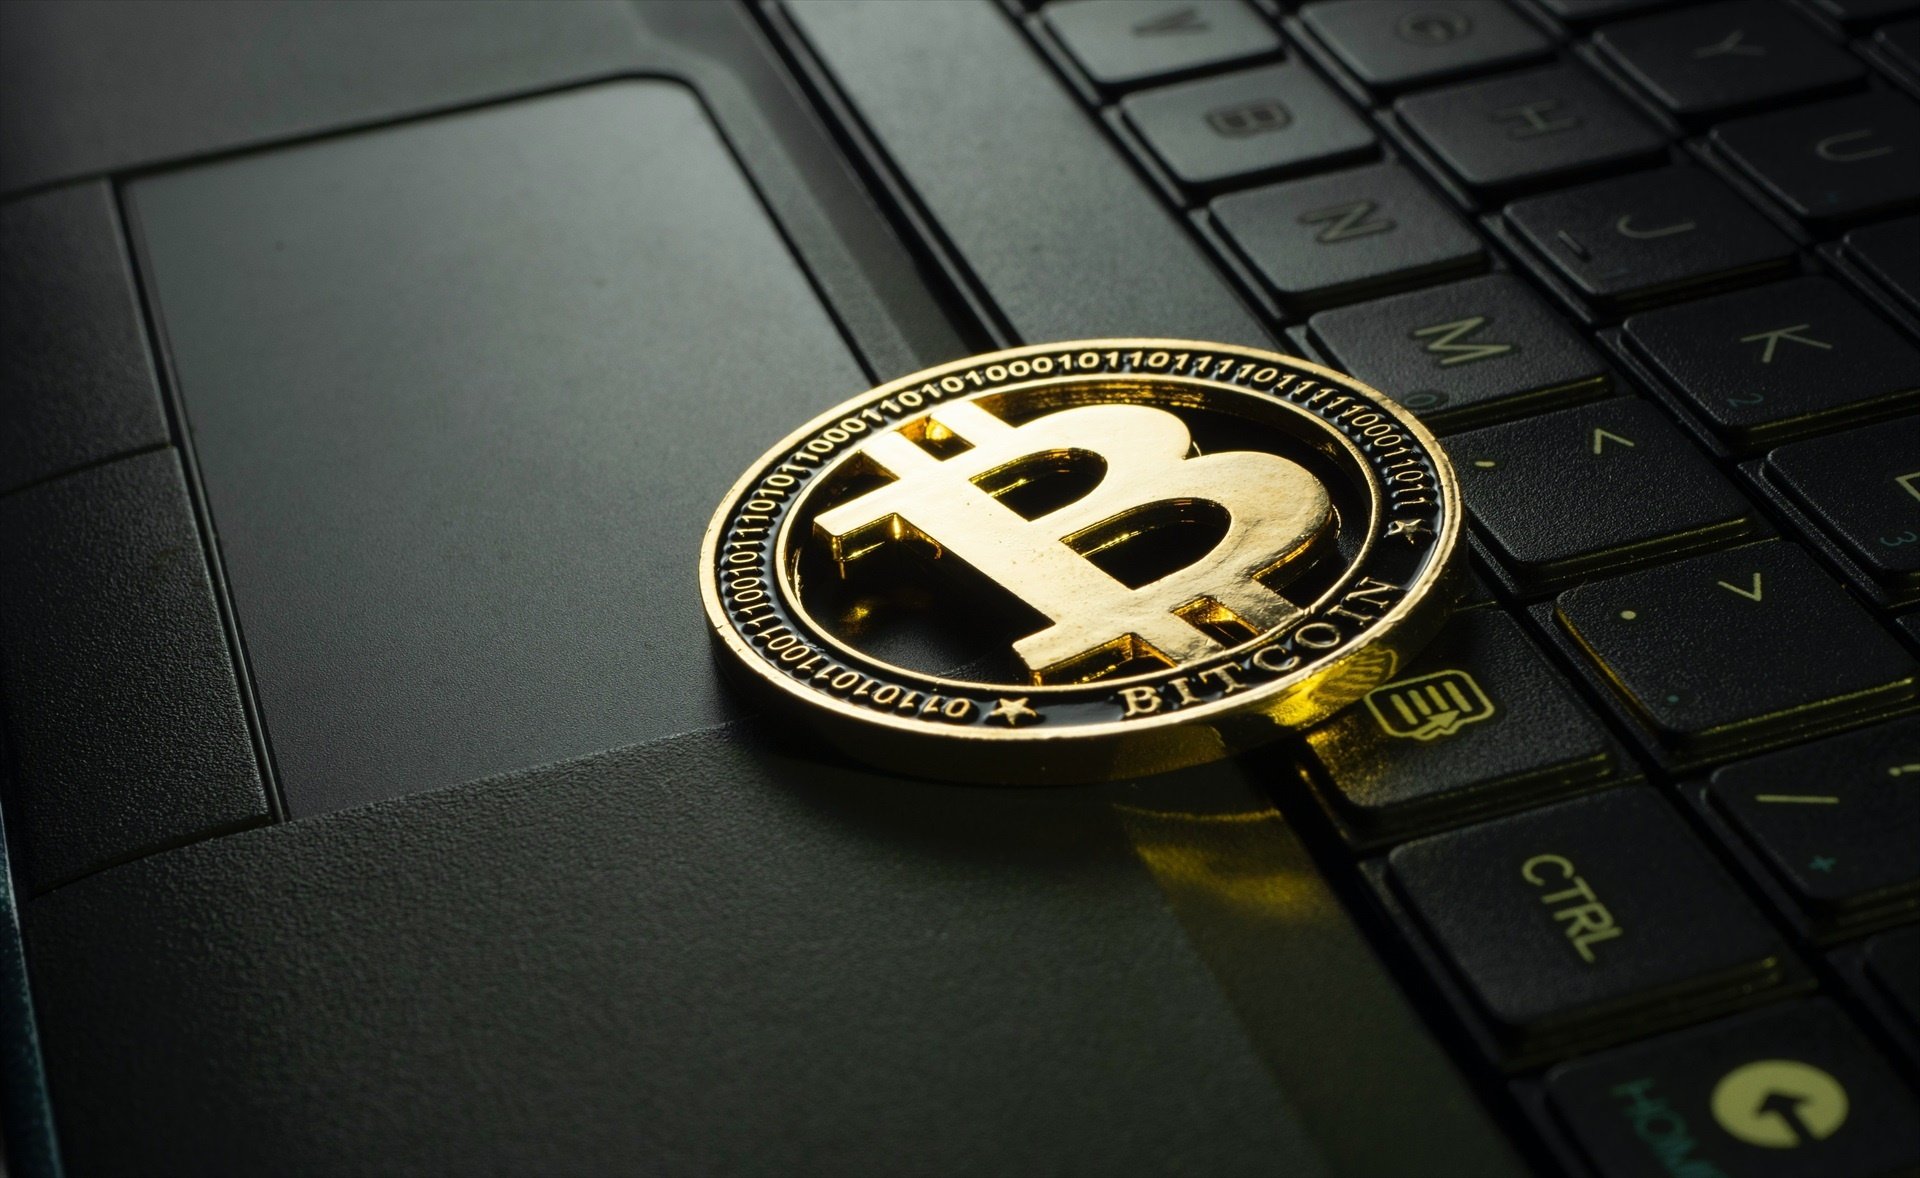 És el Bitcoin una tecnològica? Tant Meta com la criptomoneda baixen en un any